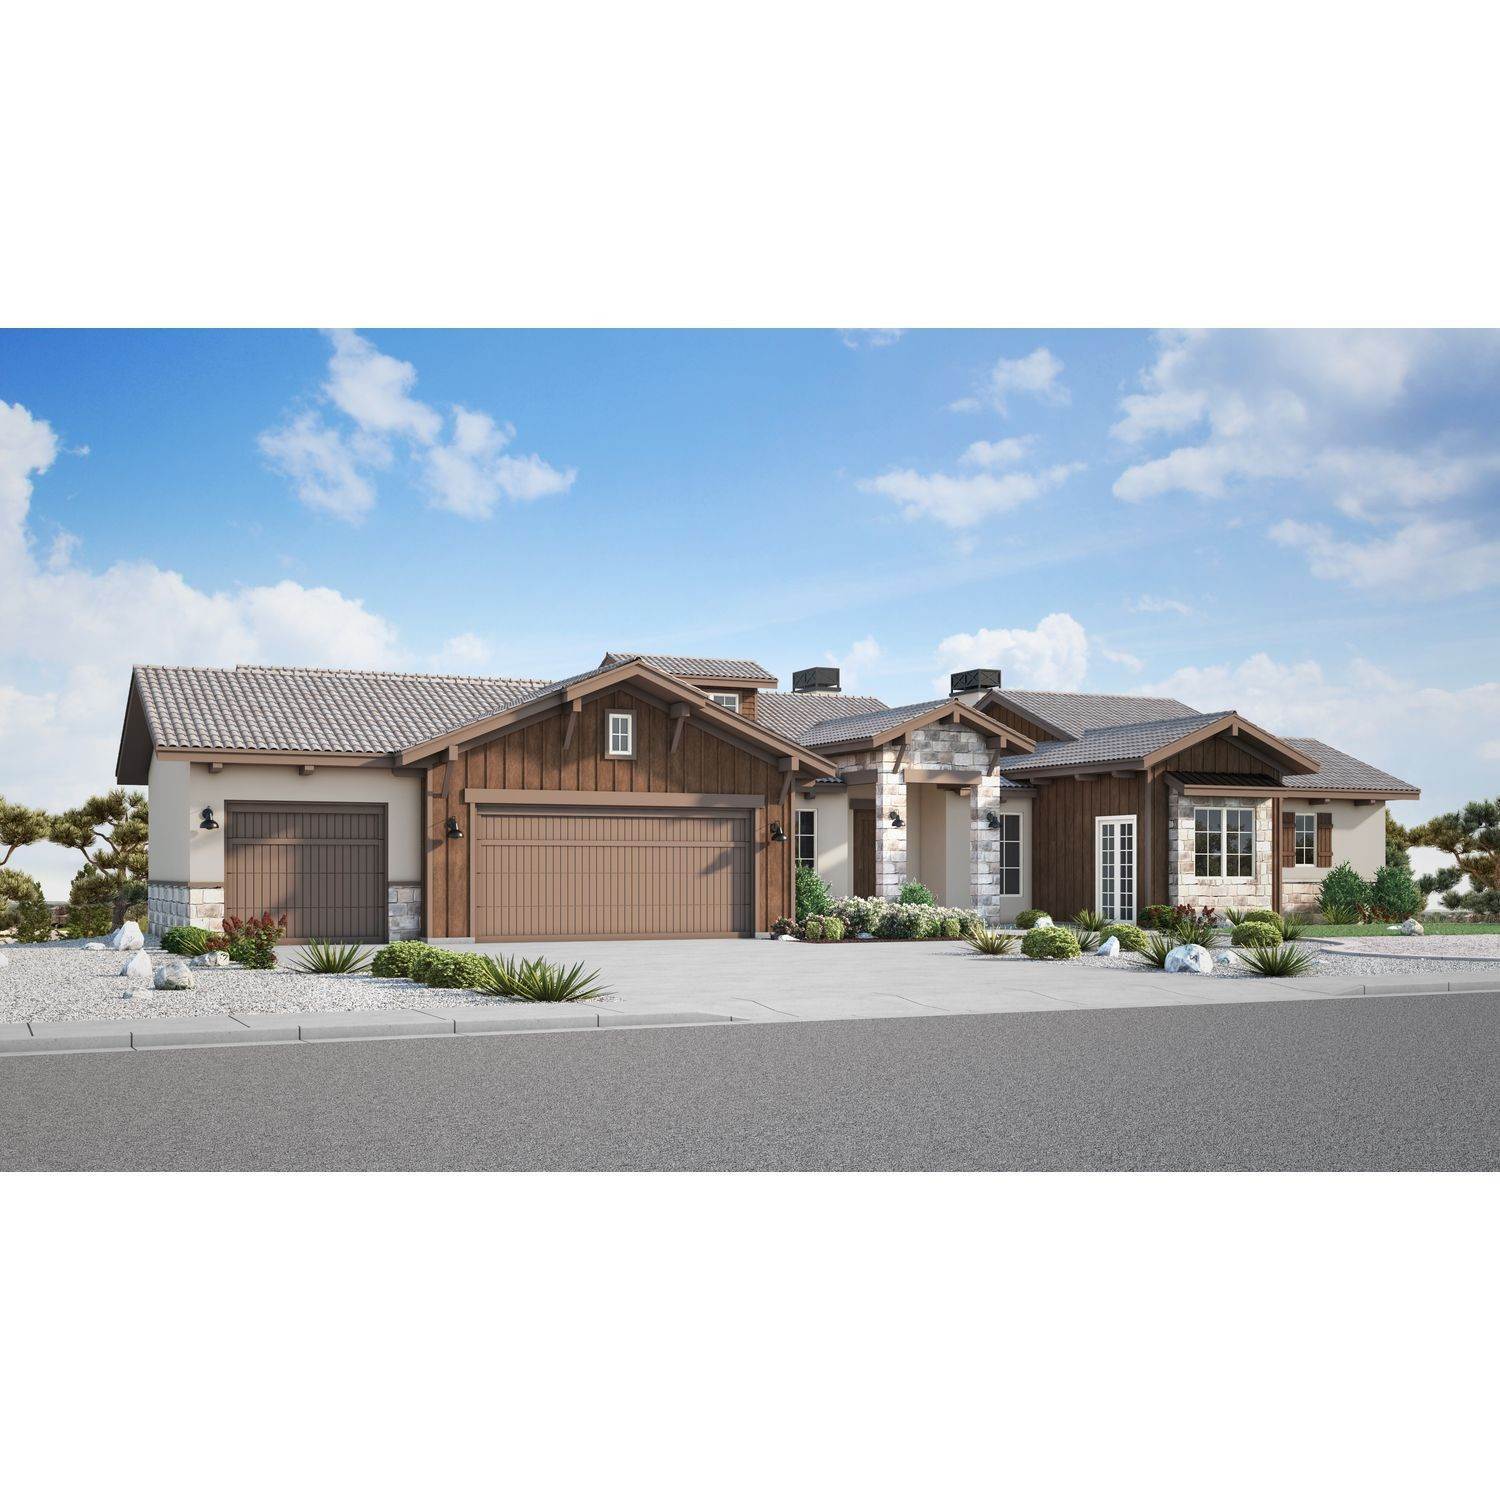 26. Galiant Homes建於 4783 Farmingdale Dr, Colorado Springs, CO 80918